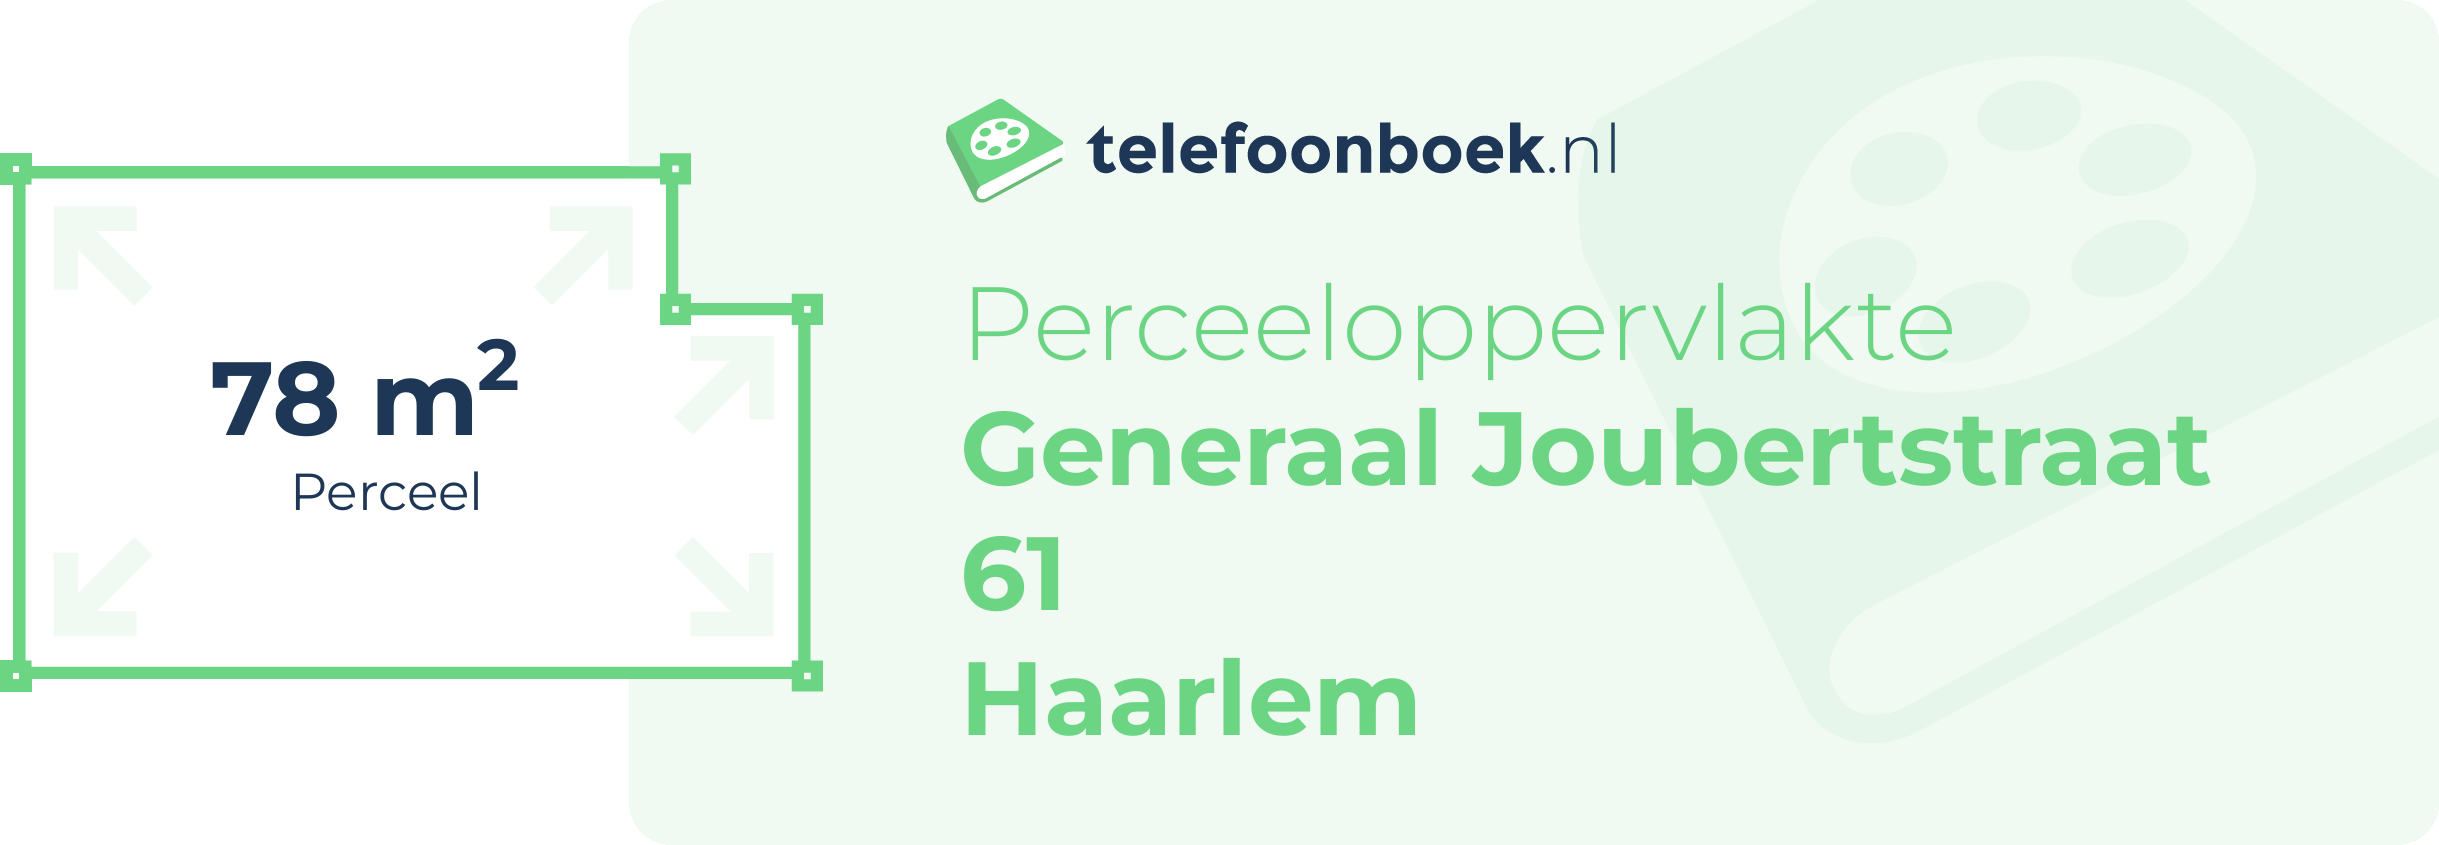 Perceeloppervlakte Generaal Joubertstraat 61 Haarlem